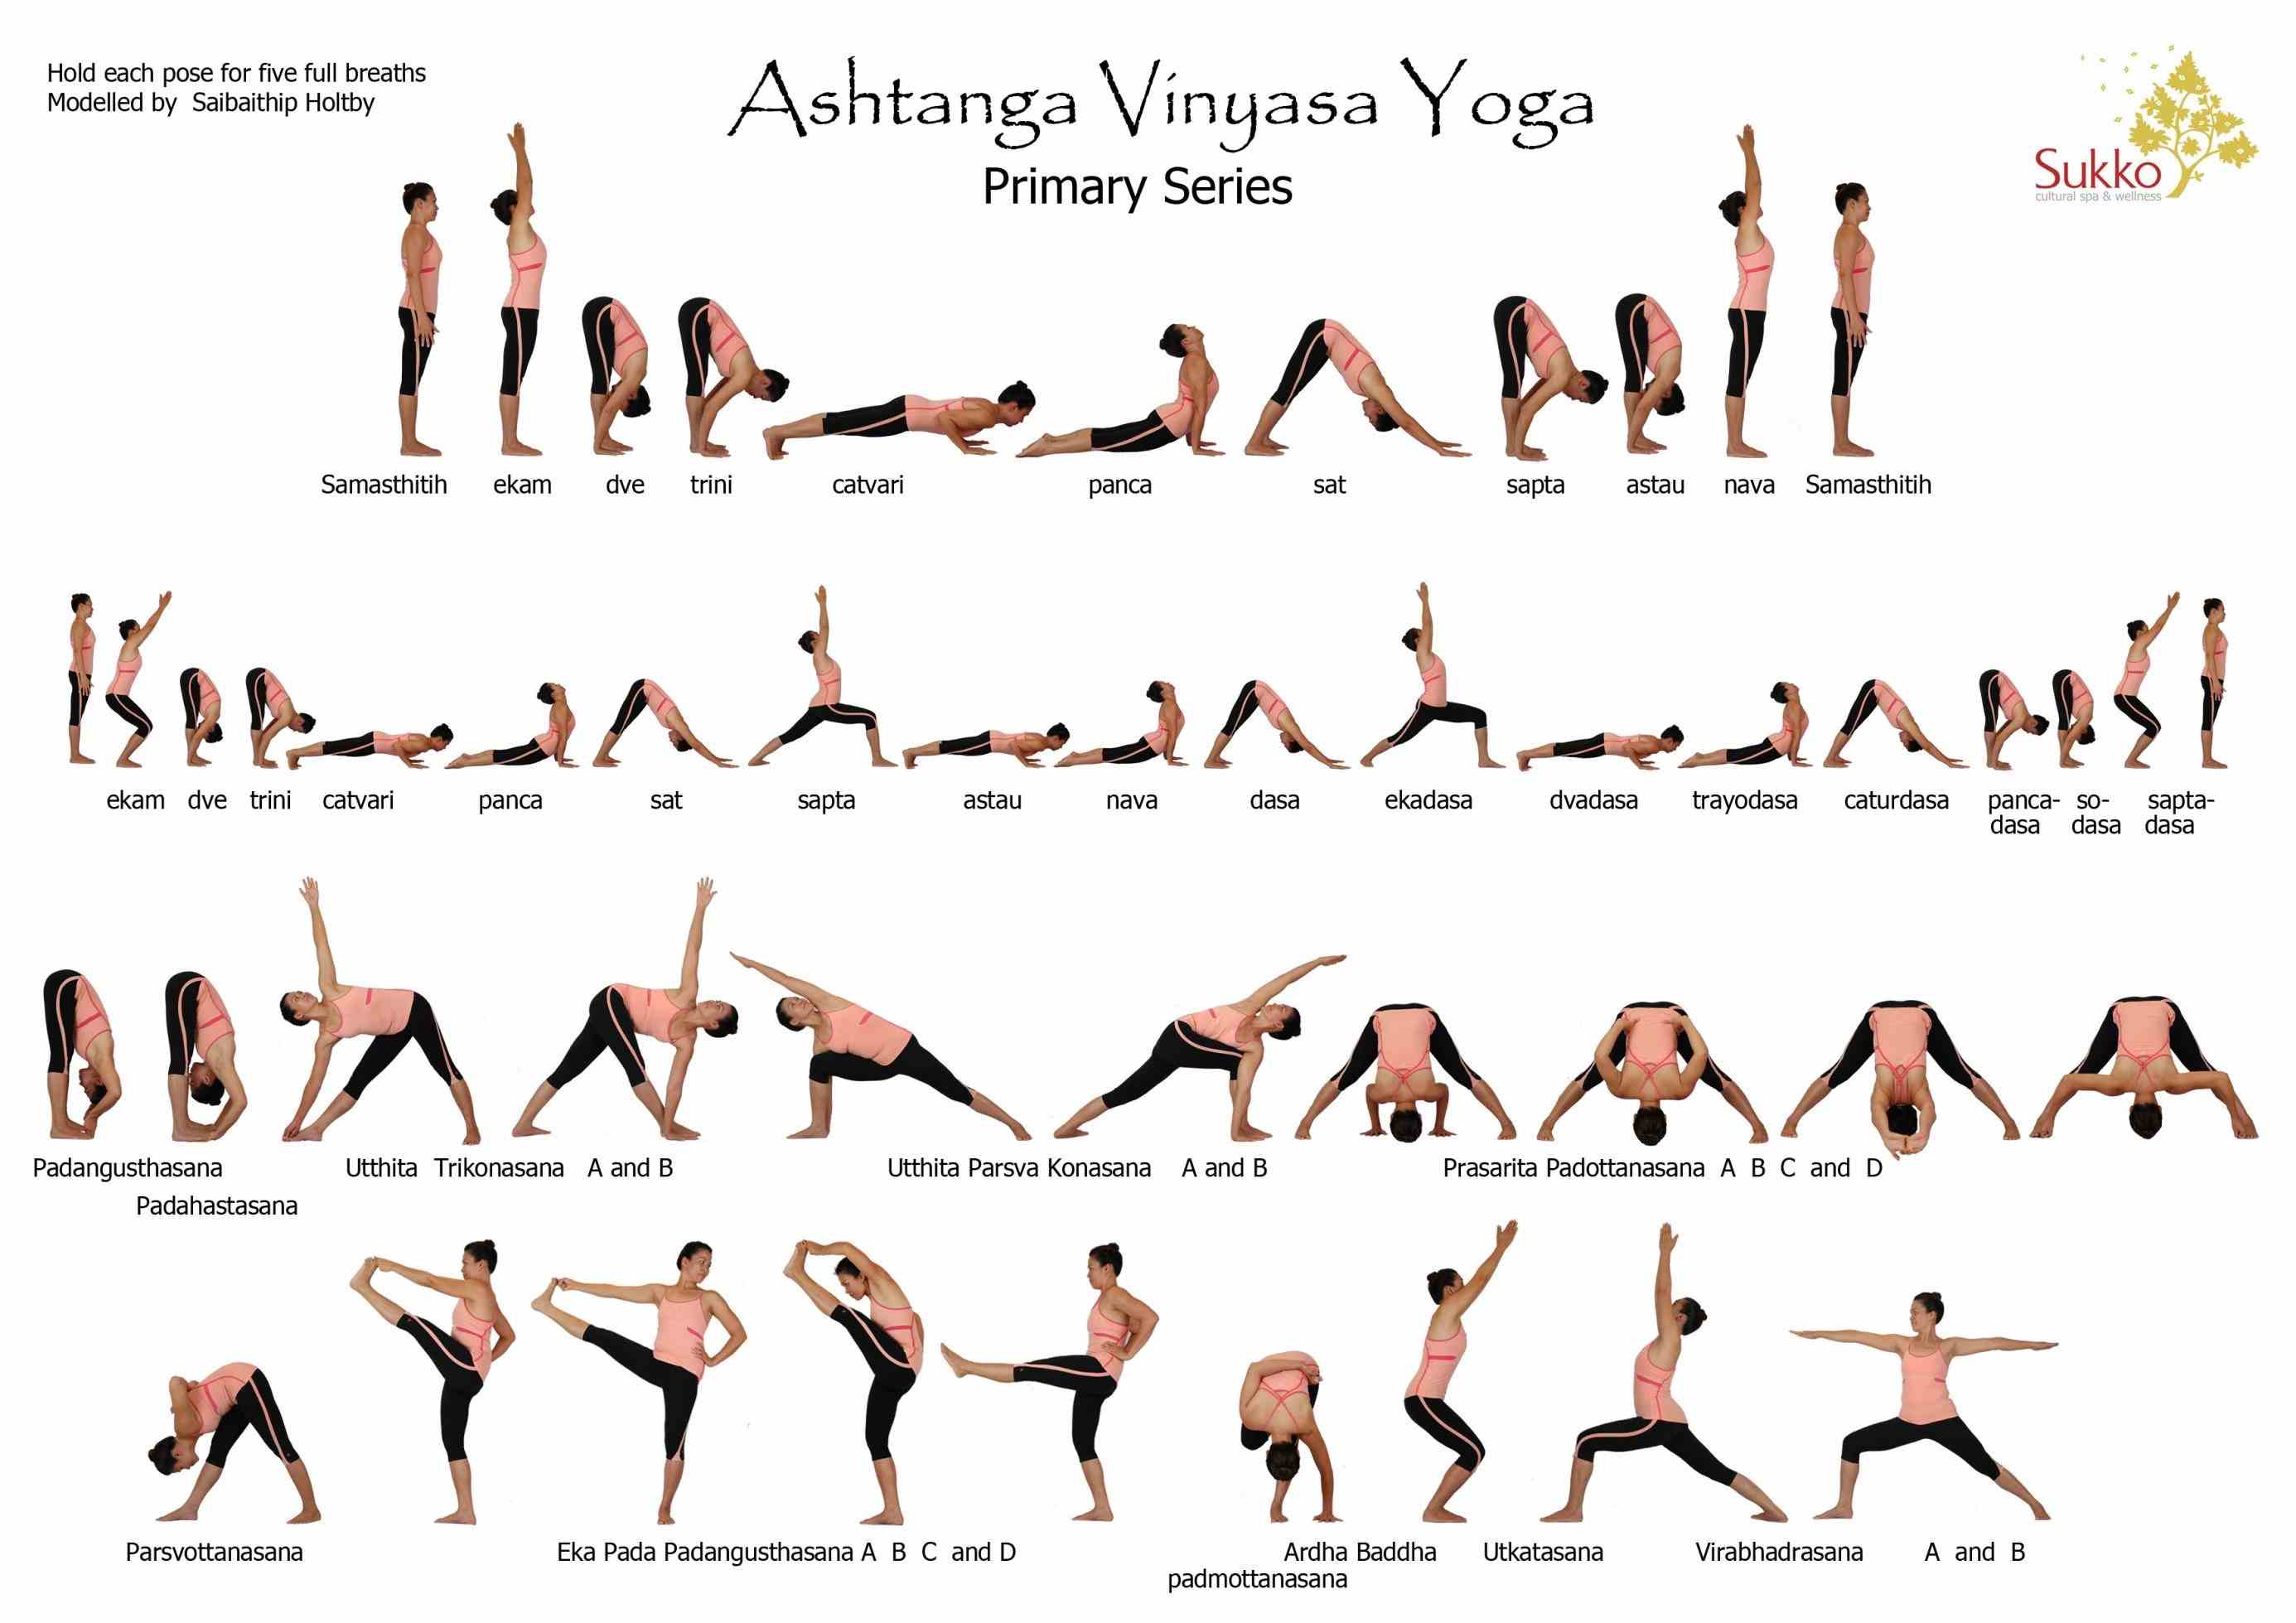 ashtanga intermediate series asanas list of yoga poses click here